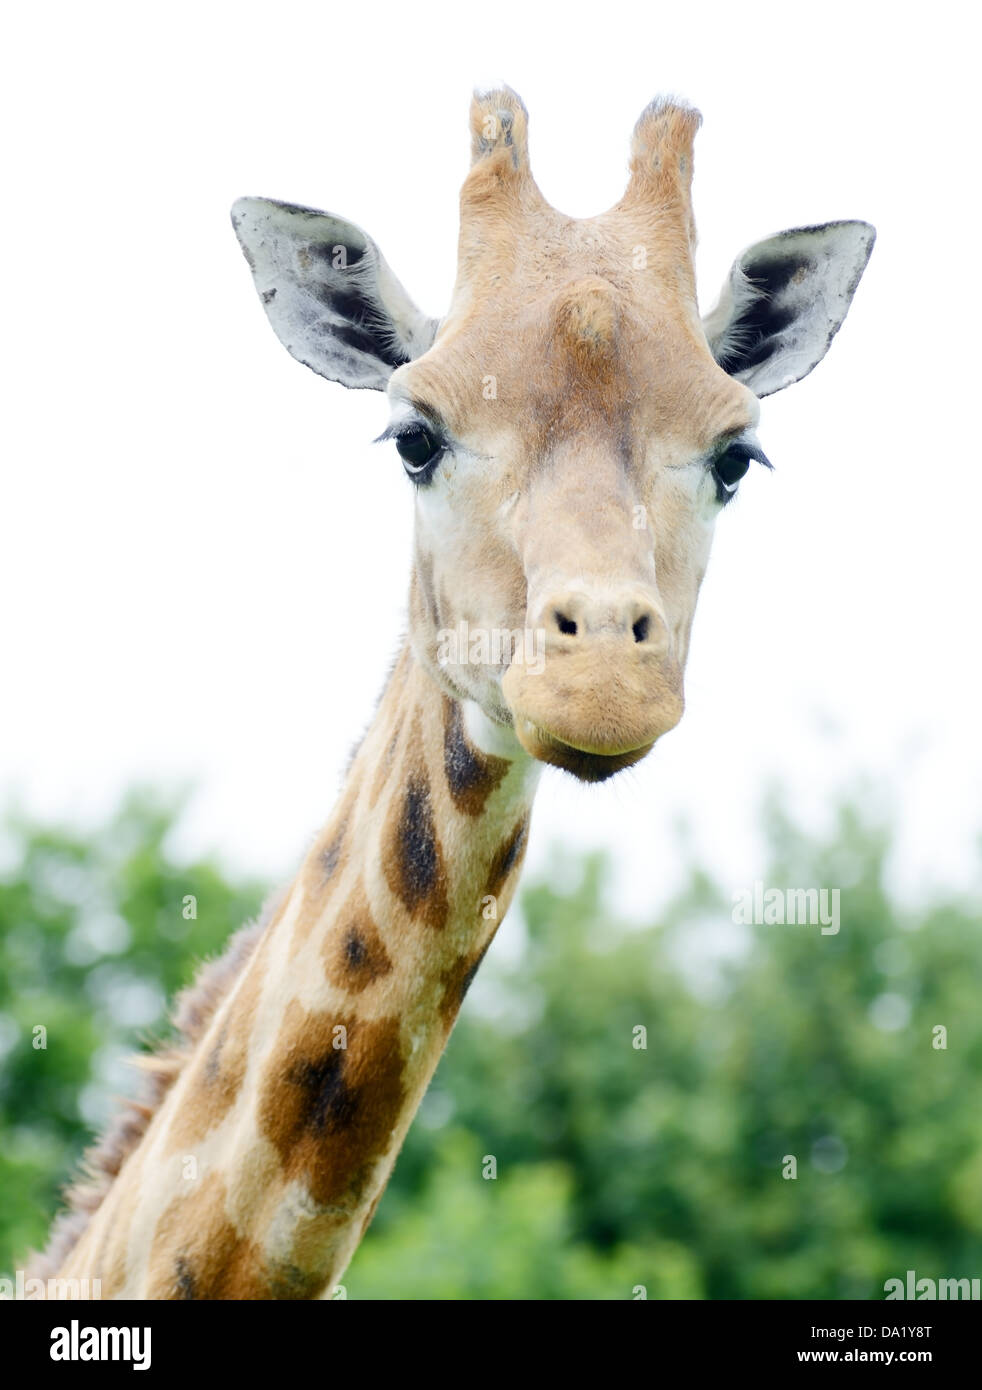 Giraffe Nahaufnahme zeigt Kopf und Hals Detail. Ohren und Hörner Prominente. Stockfoto